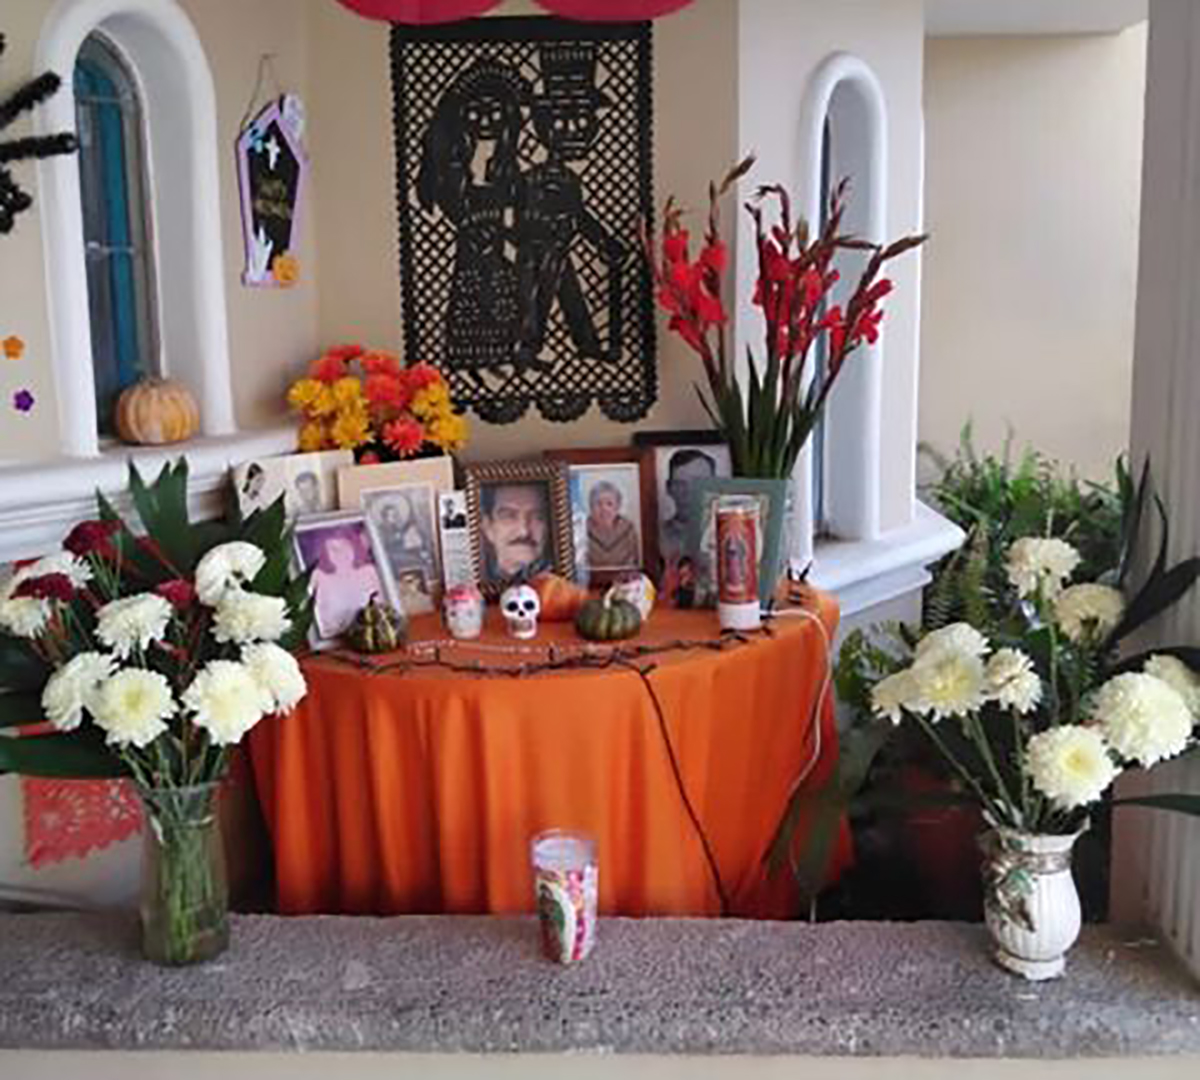 Hermanas y madre de Ana Patricia también hacen su altar de muertos